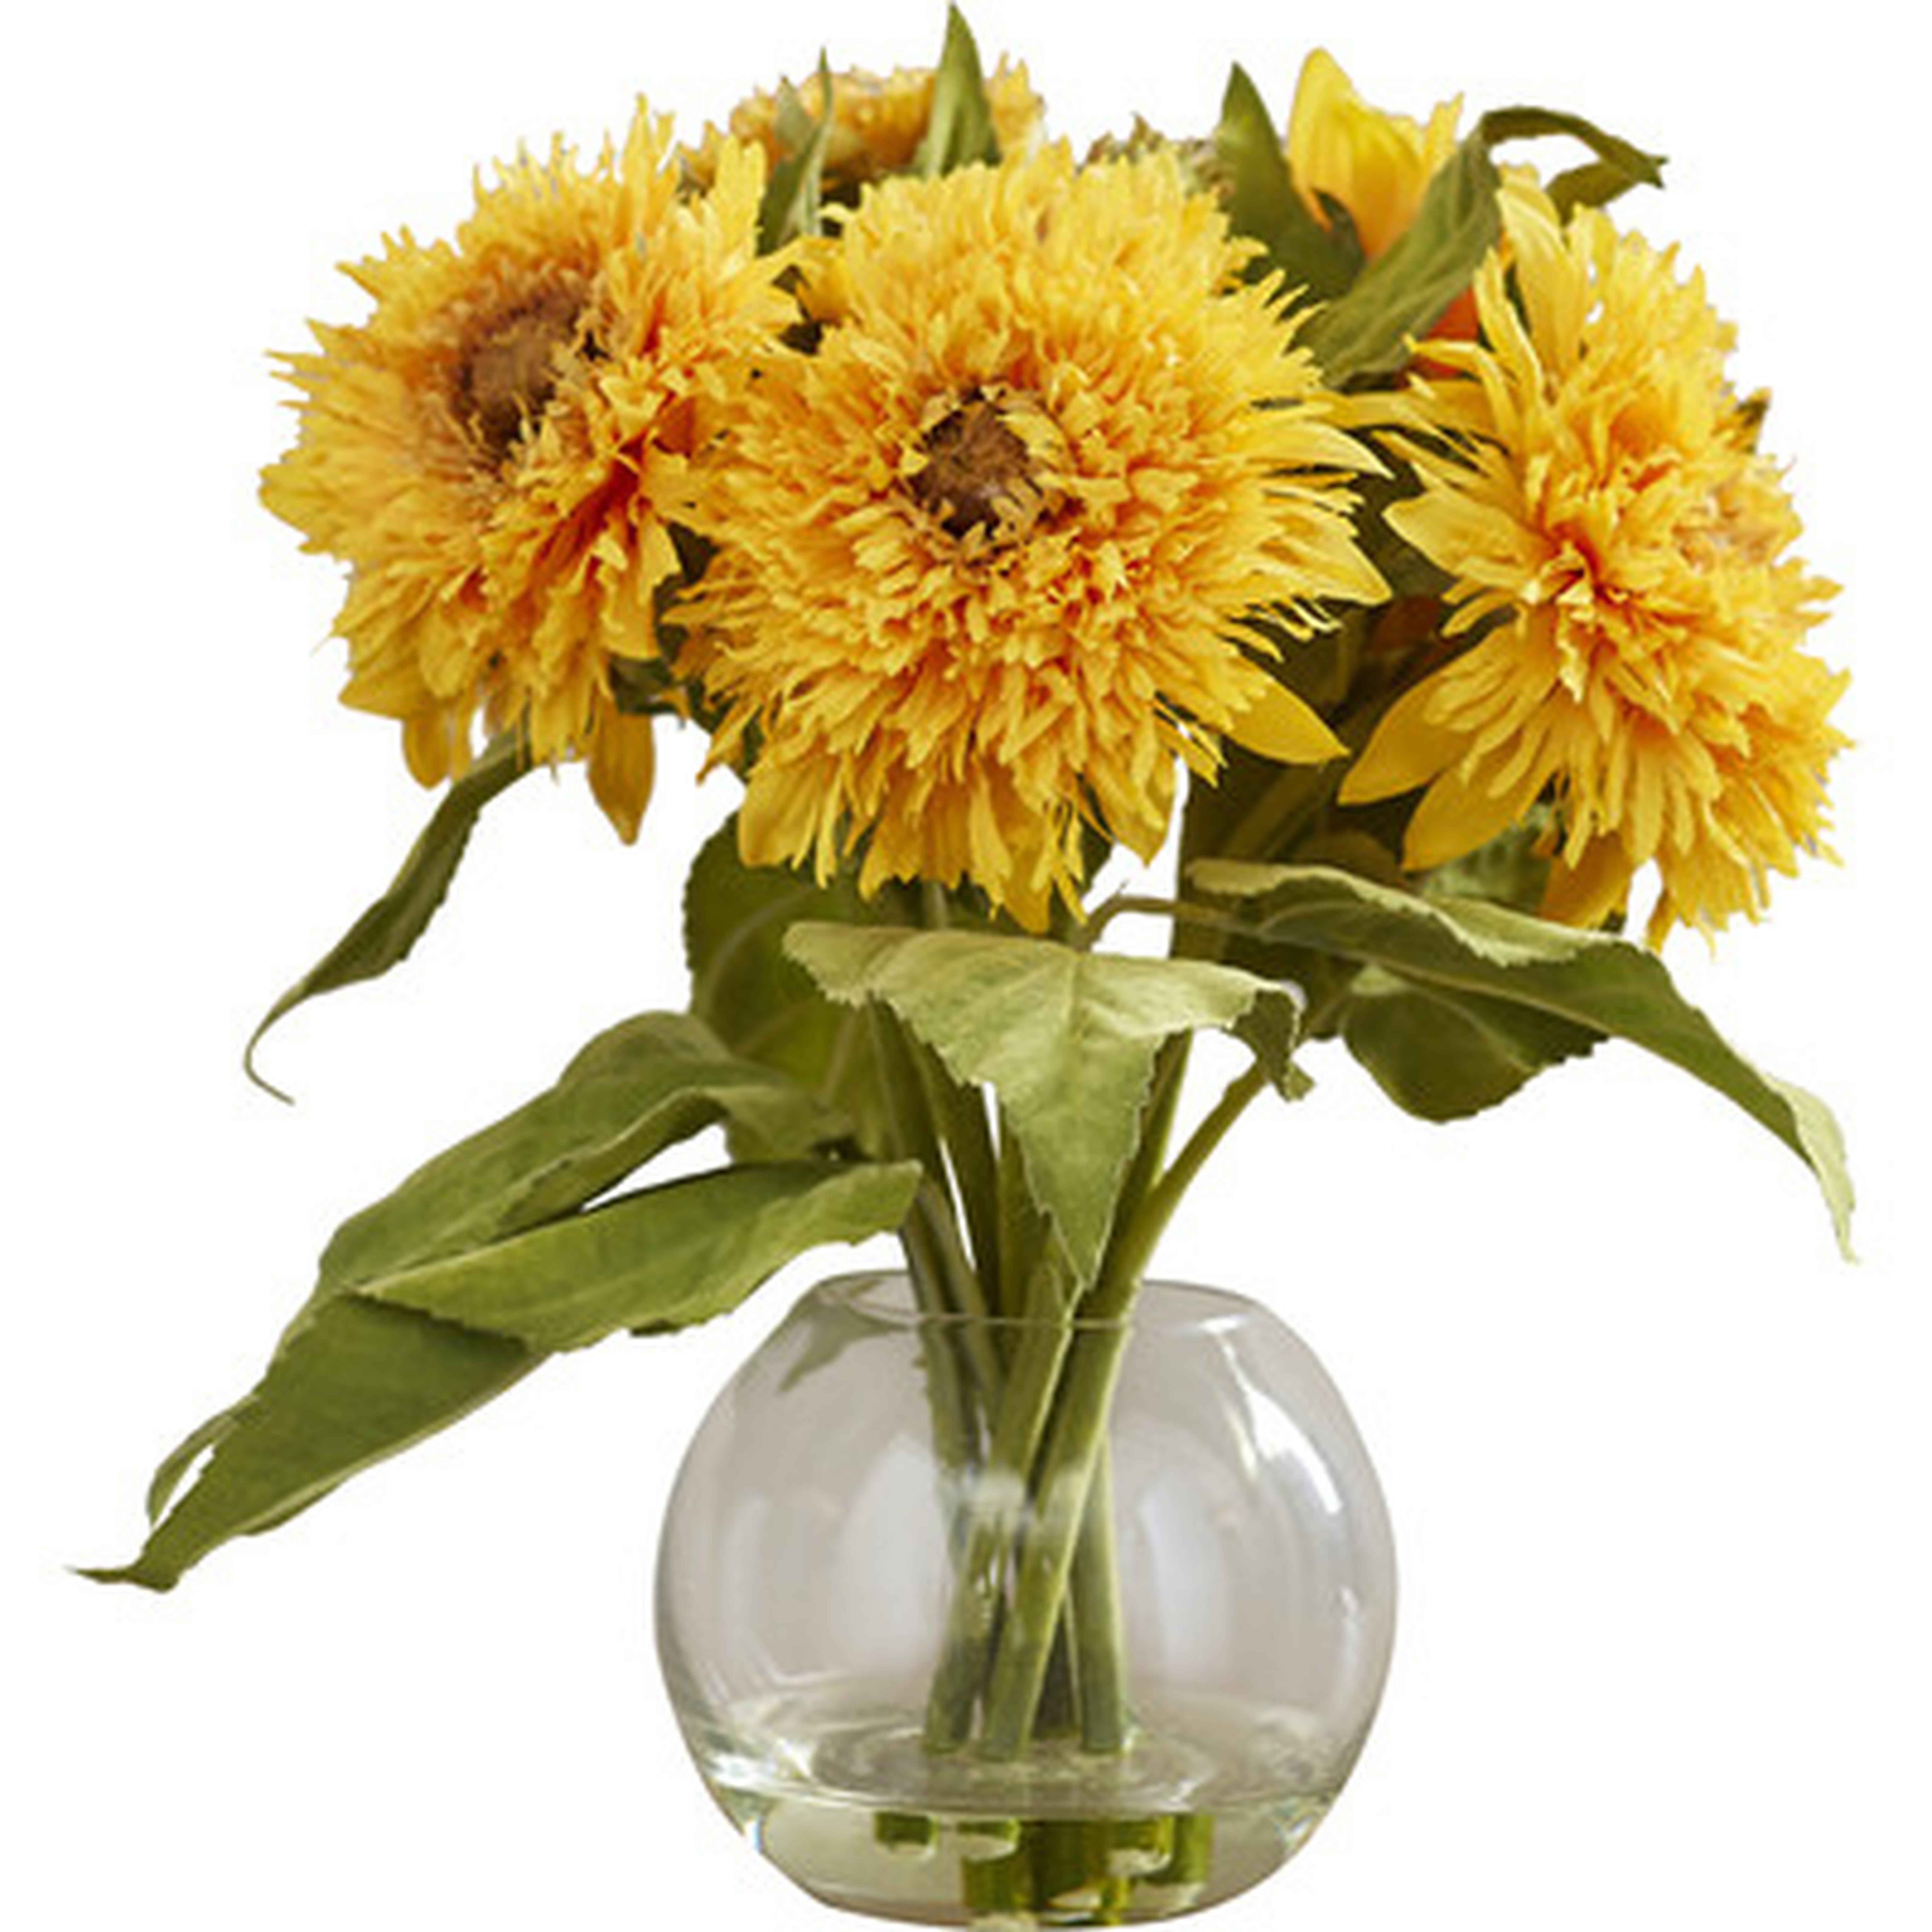 Golden Sunflower Floral Arrangement in Vase - Birch Lane